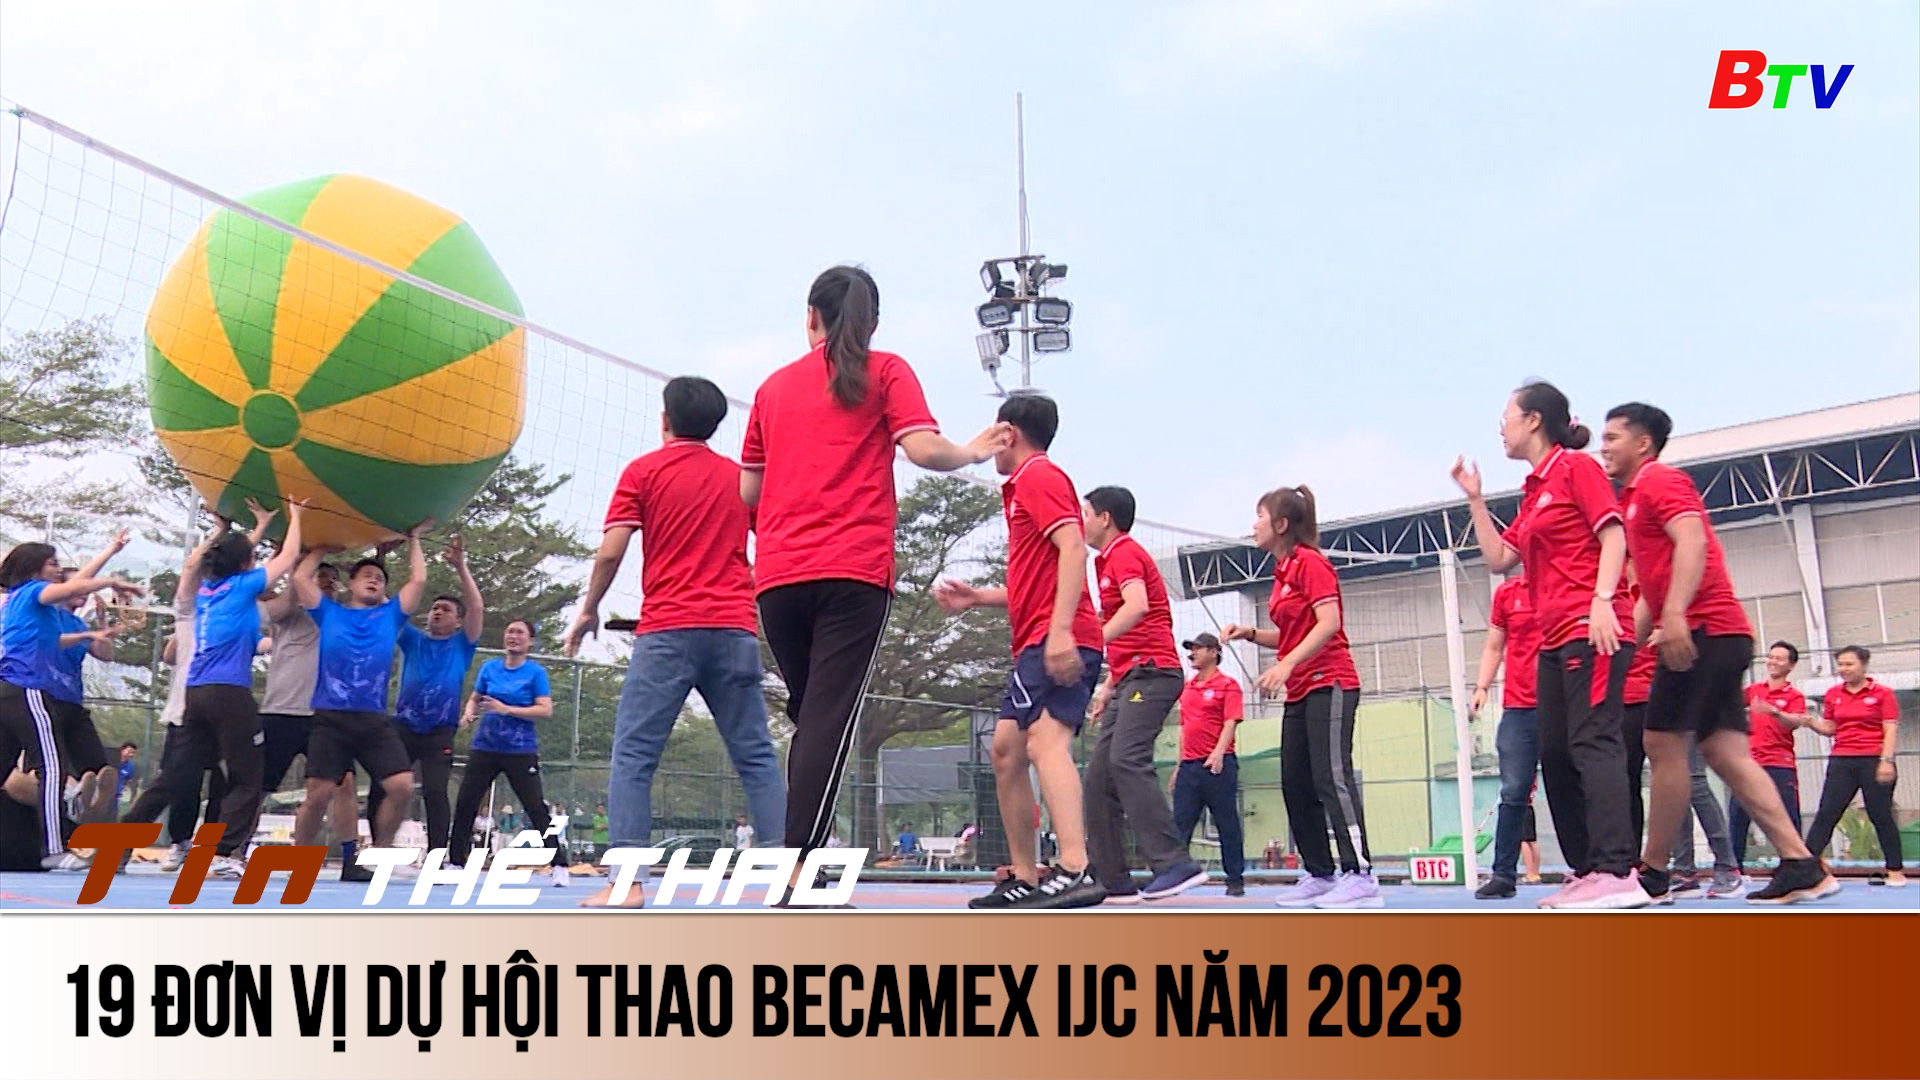 19 đơn vị dự Hội thao Becamex IJC năm 2023 | Tin Thể thao 24h